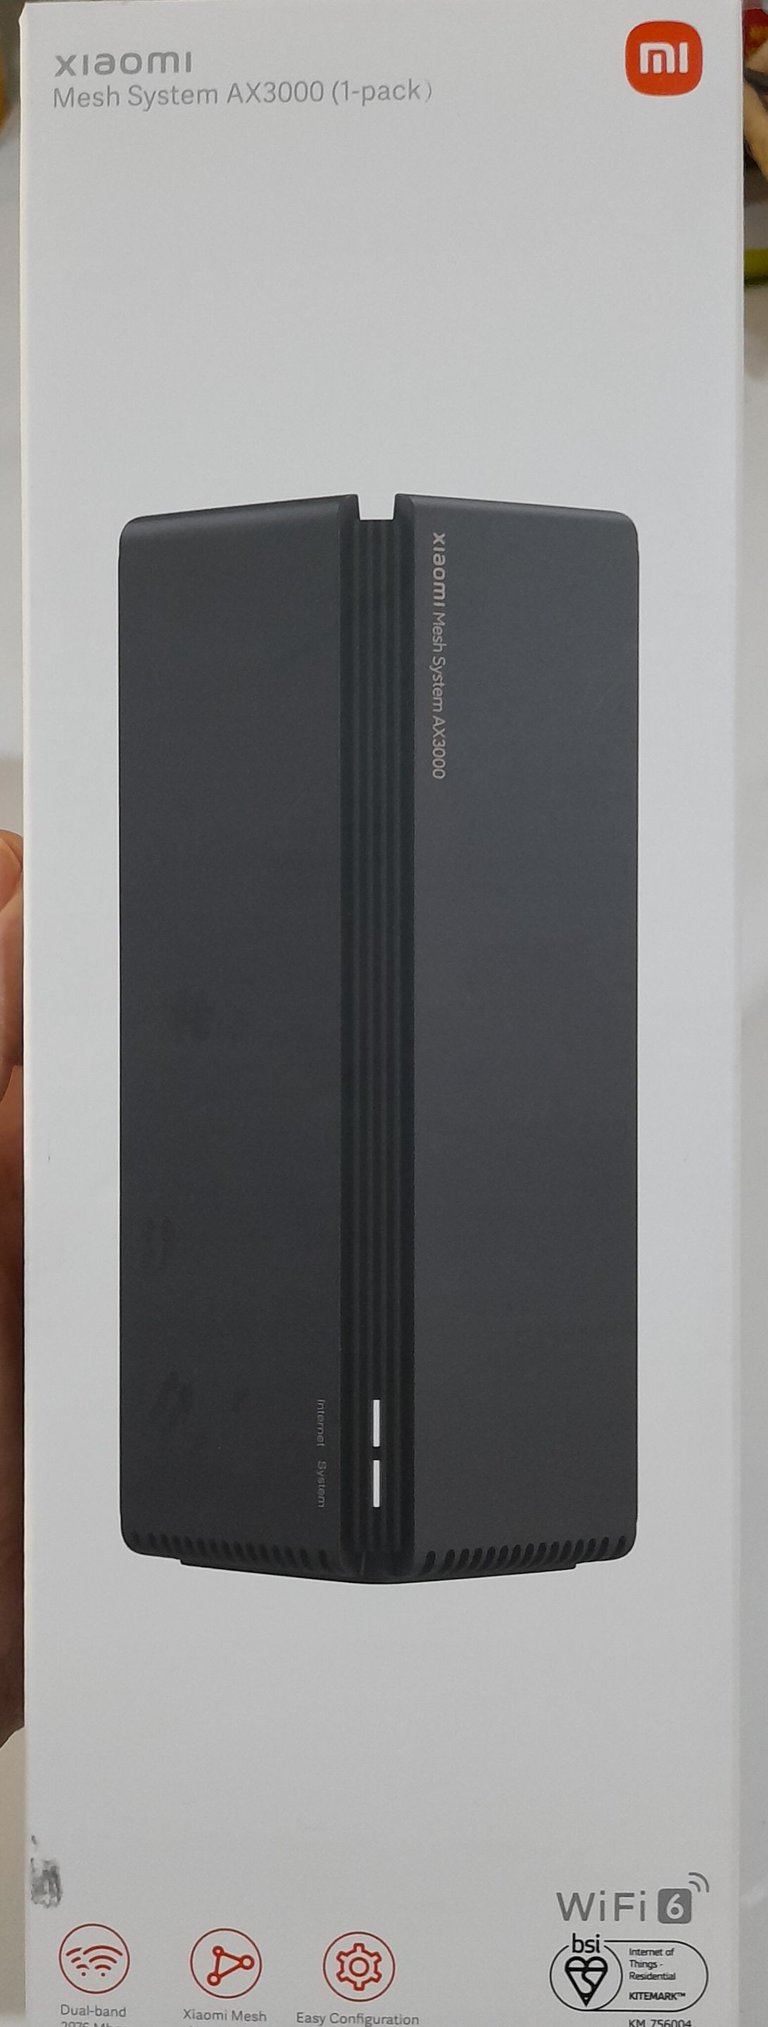 Router Xiaomi Ax3000